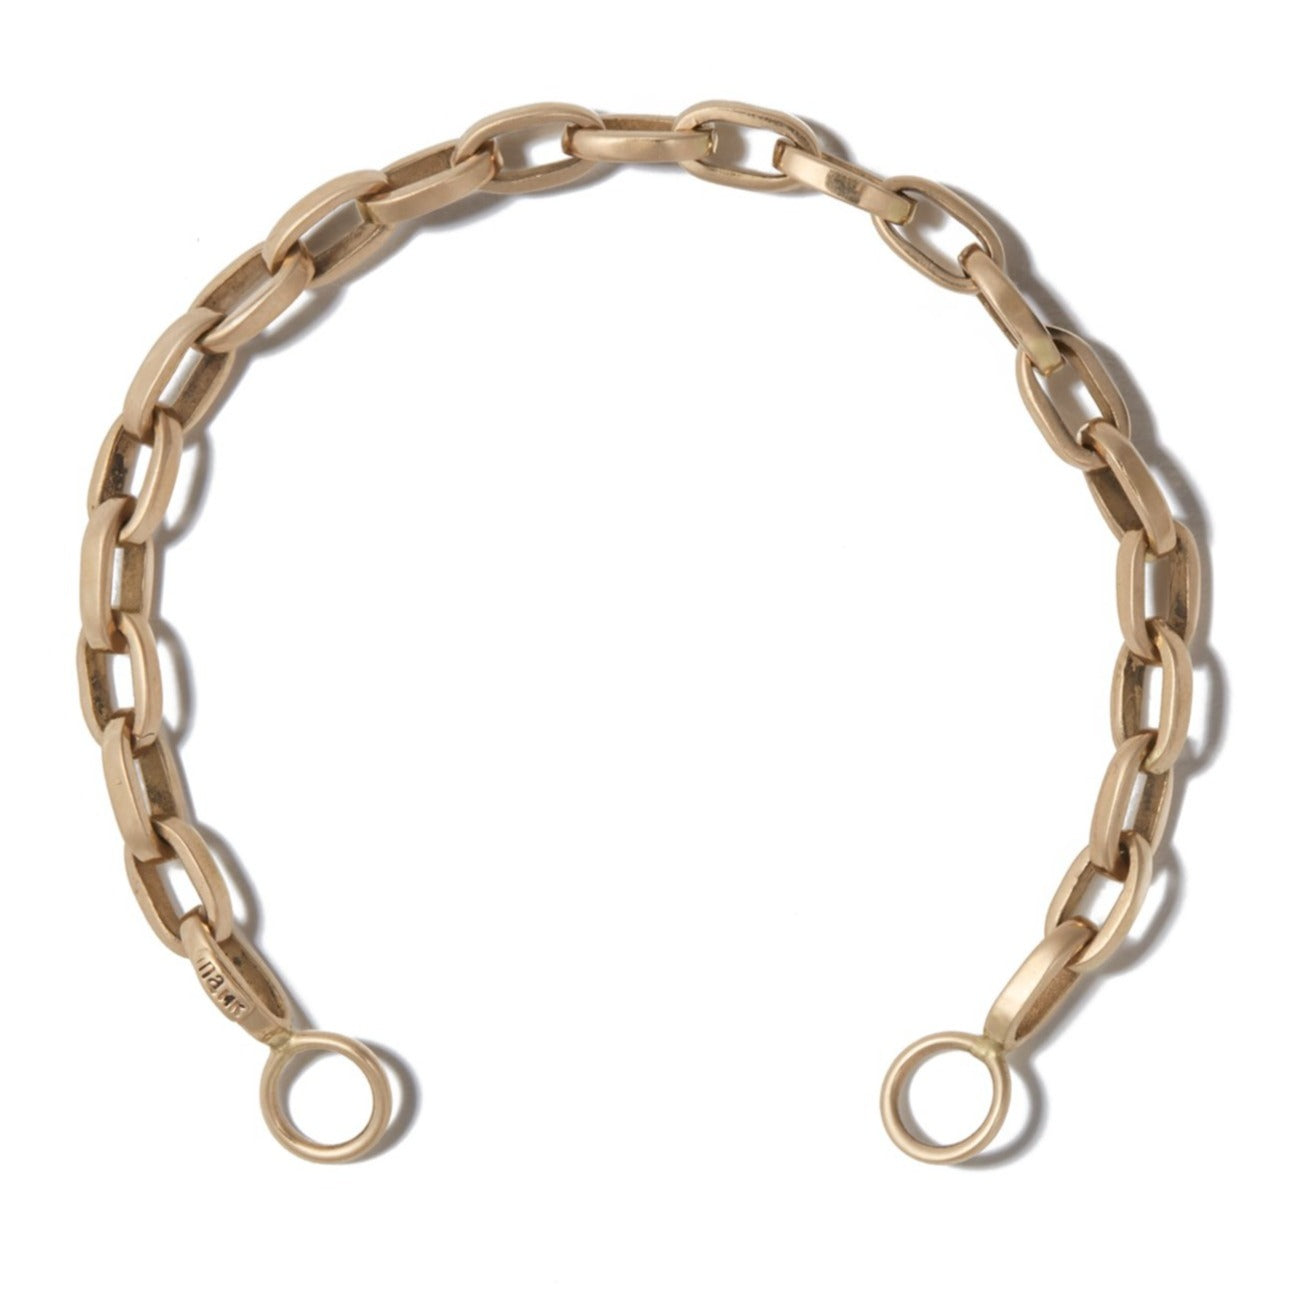 Handmade Biker Chain Bracelet in Gold